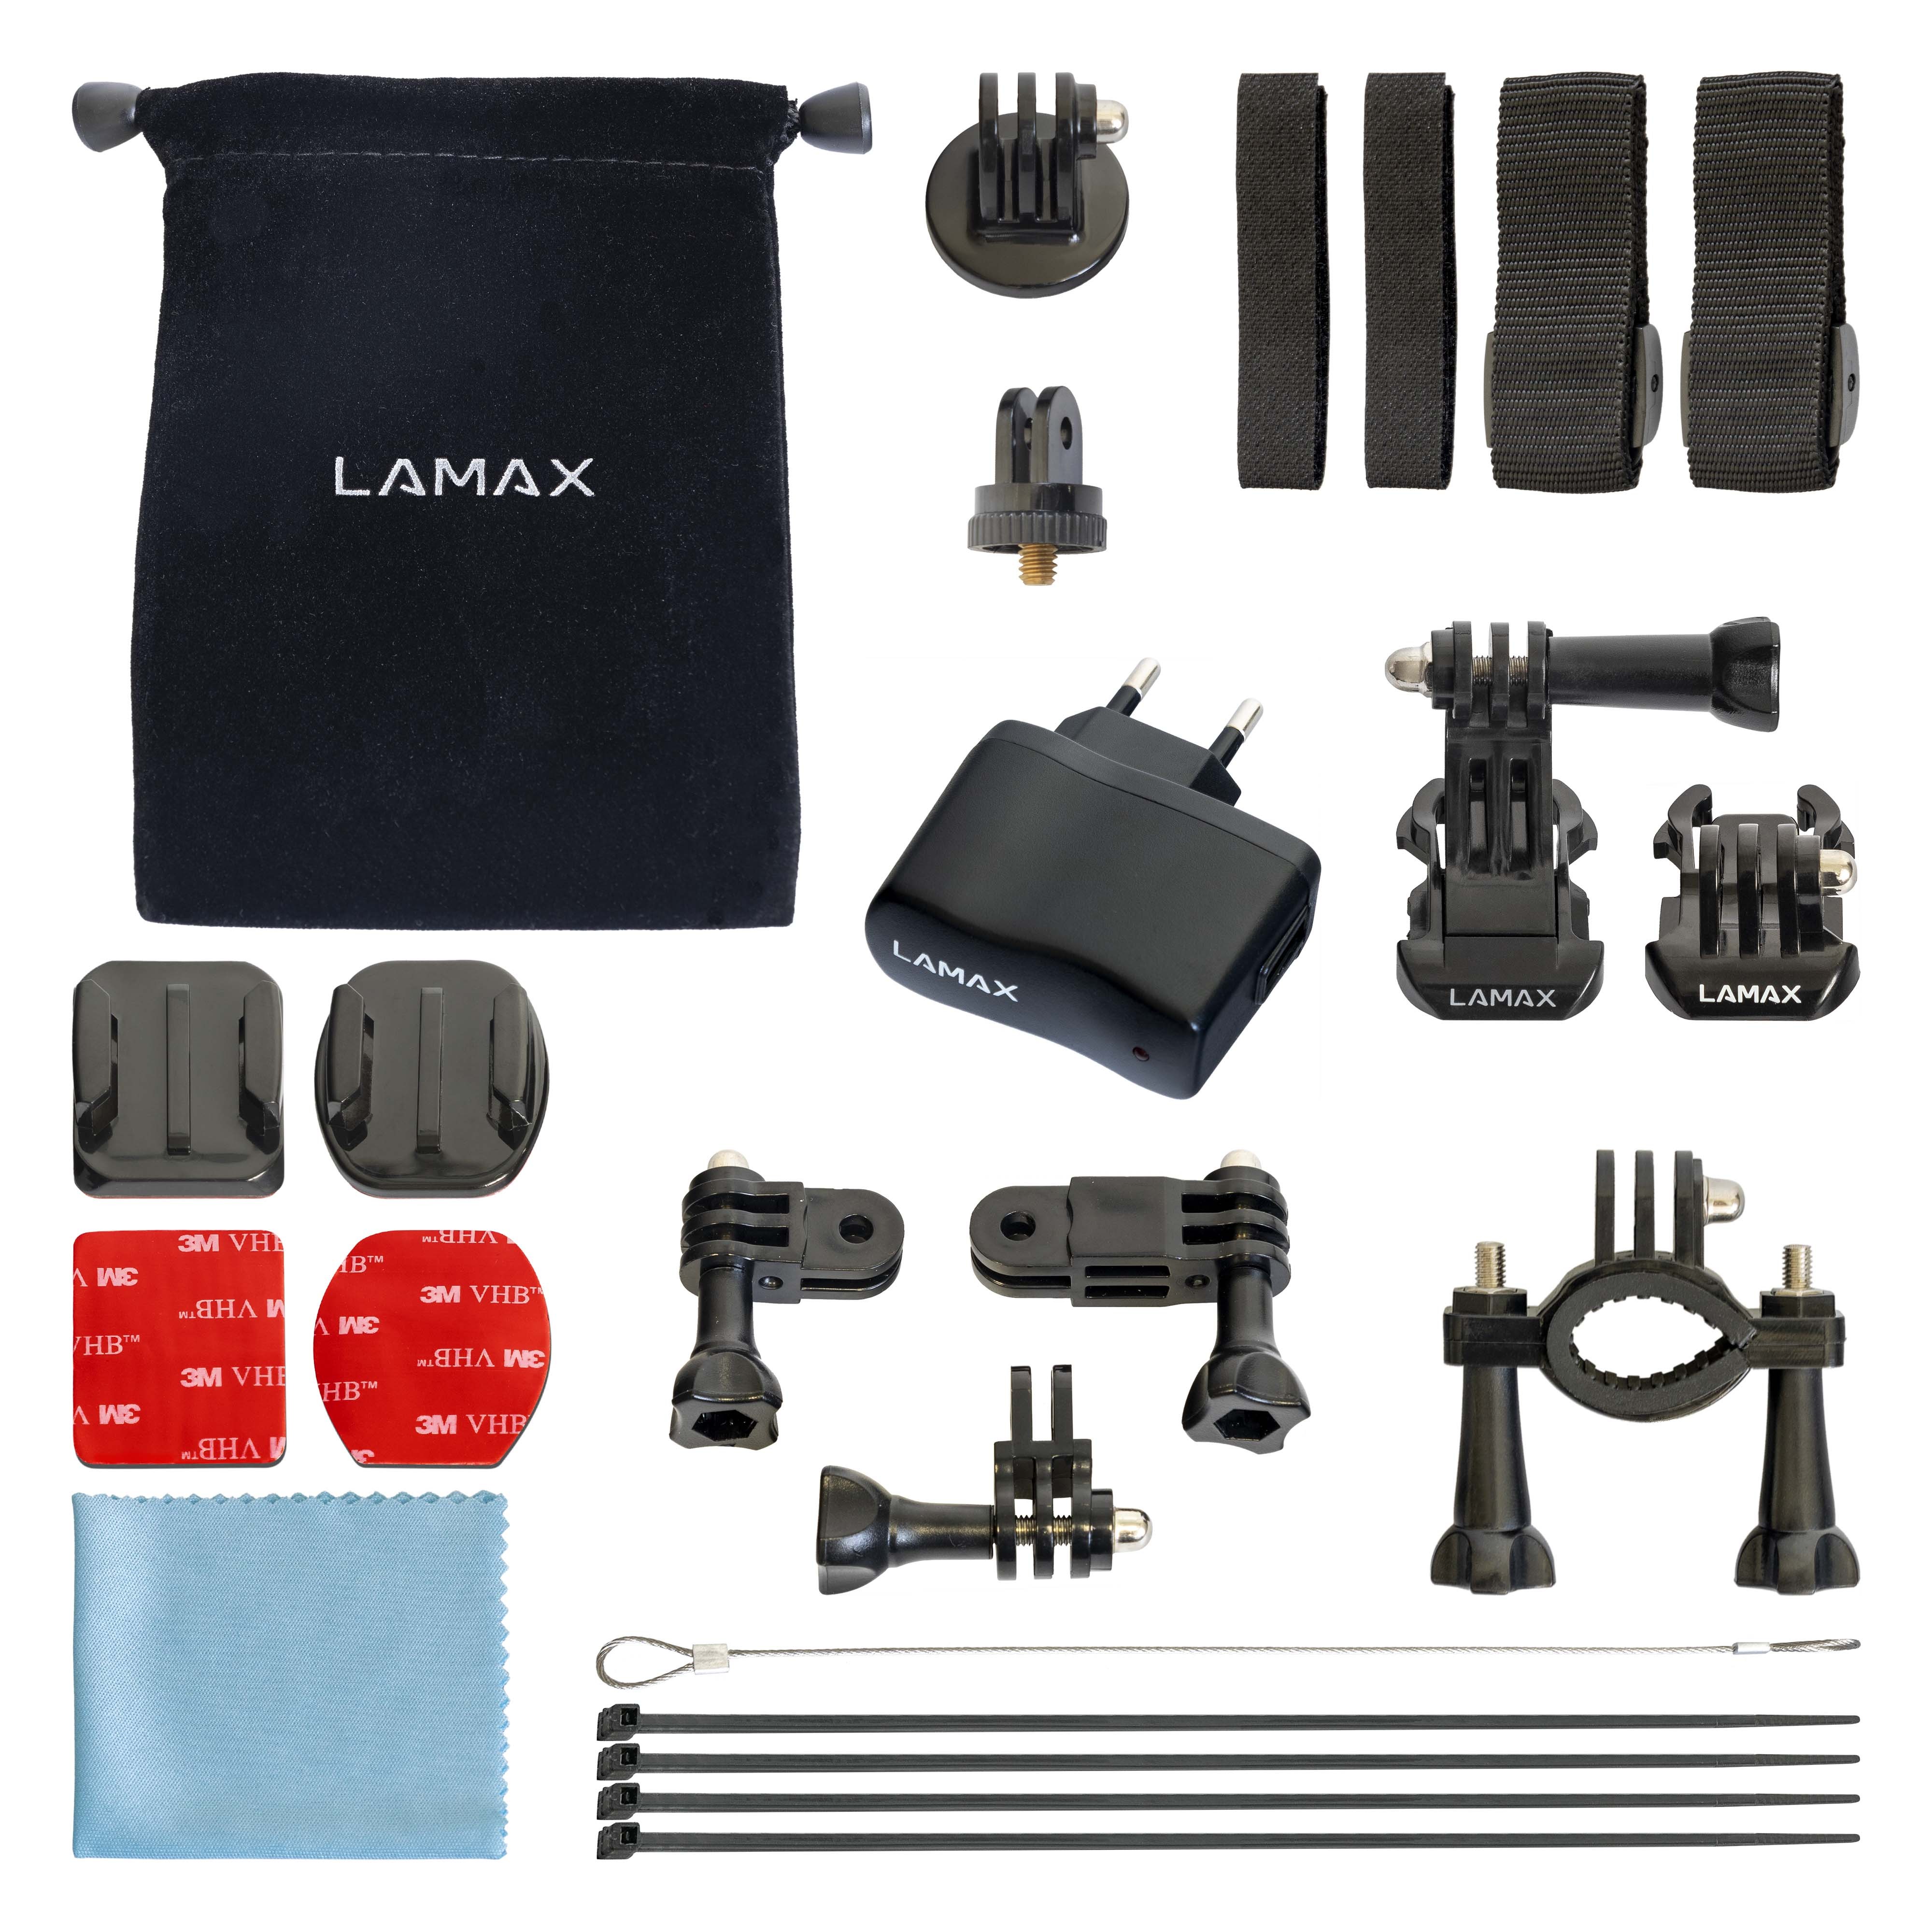 LAMAX LAMAX Sada příslušenství pro akční kamery L - 15 ks